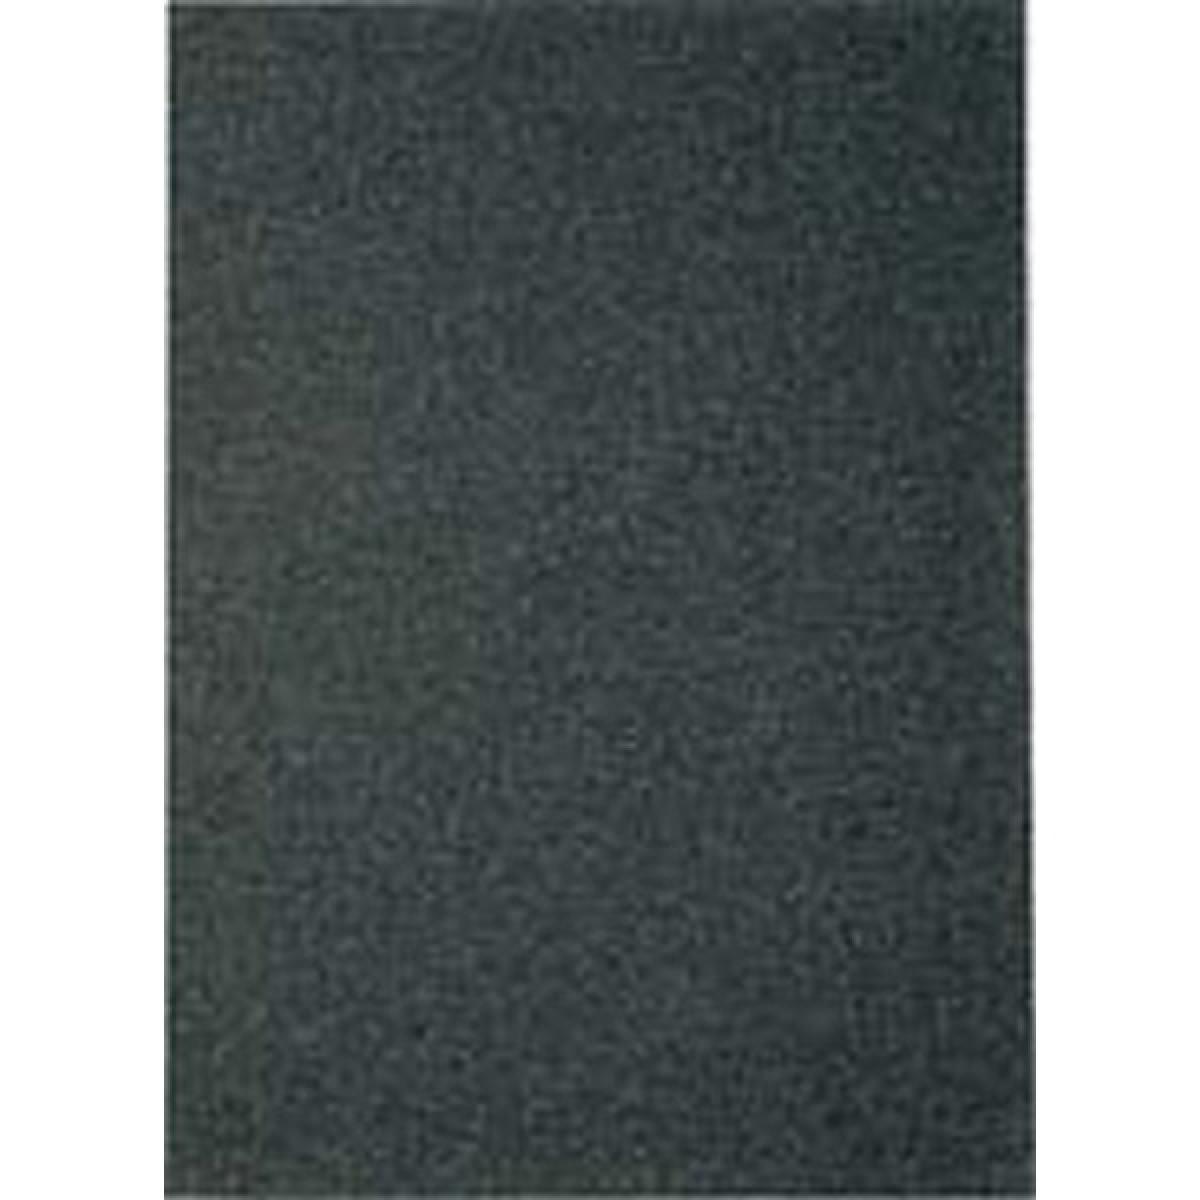 Klingspor - Papier en abrasif résistant à l'eau PS11230x280mm grain 320 Klingspor (Par 100) - Abrasifs et brosses